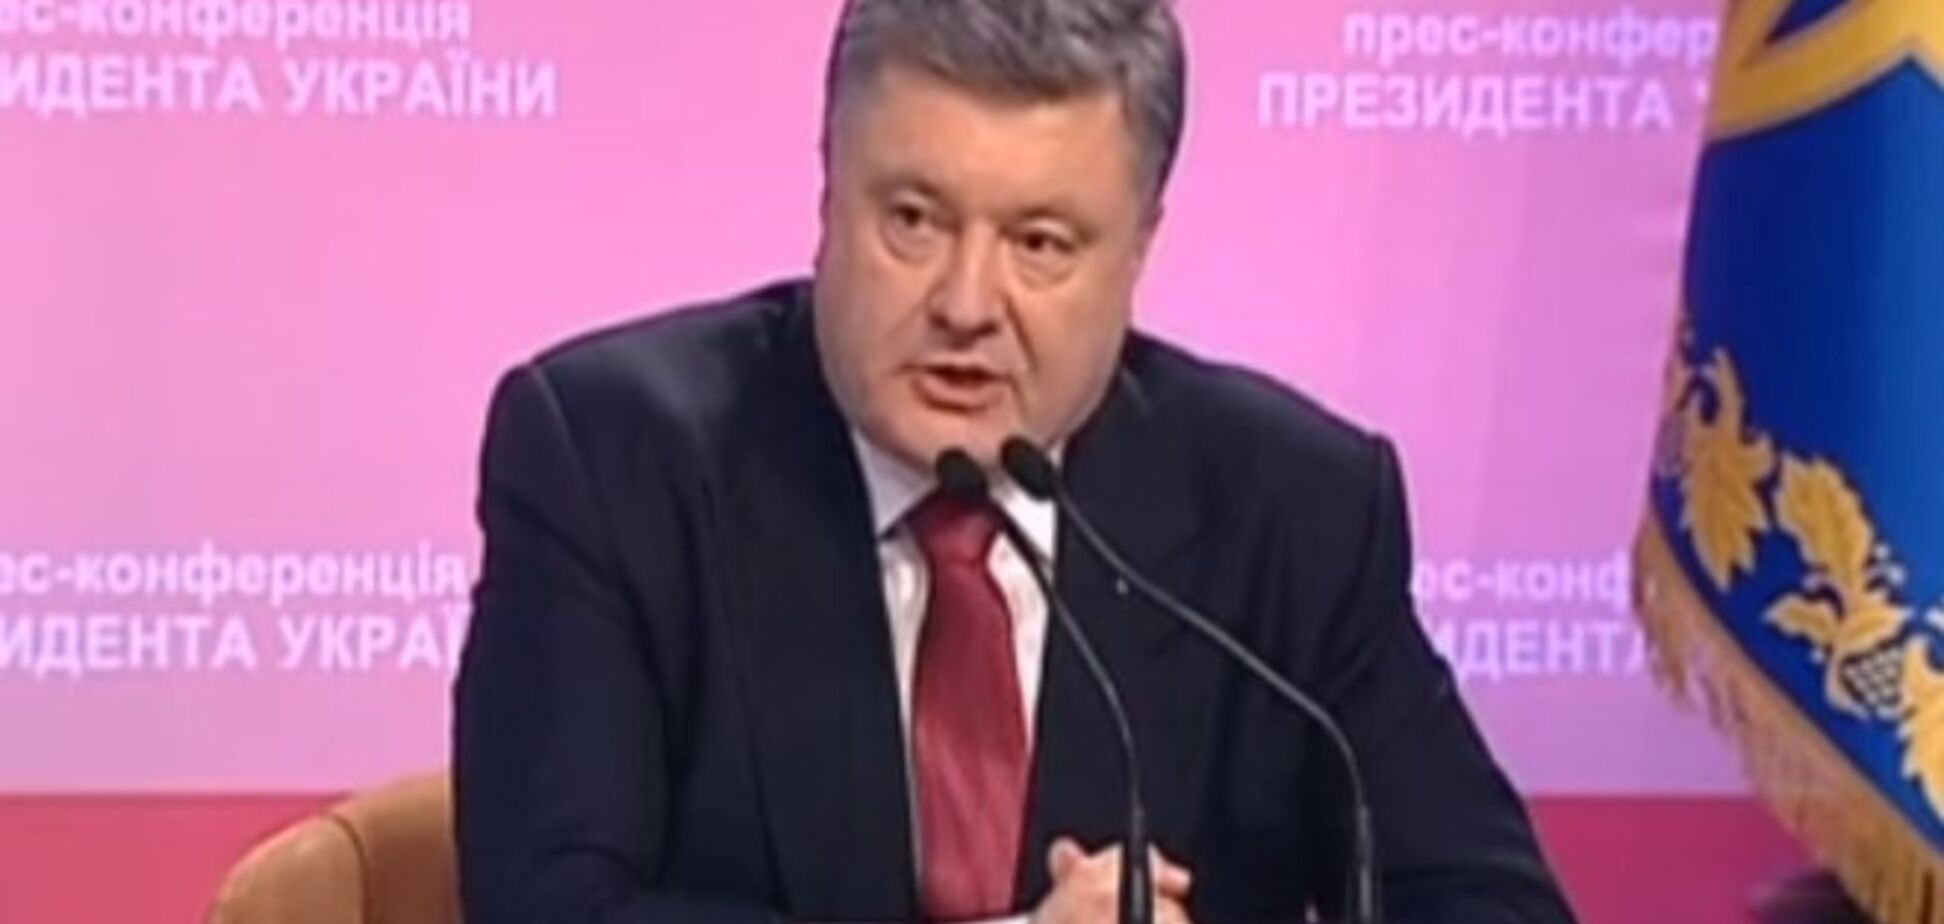 Порошенко выступил за открытое расследование дела Гонгадзе